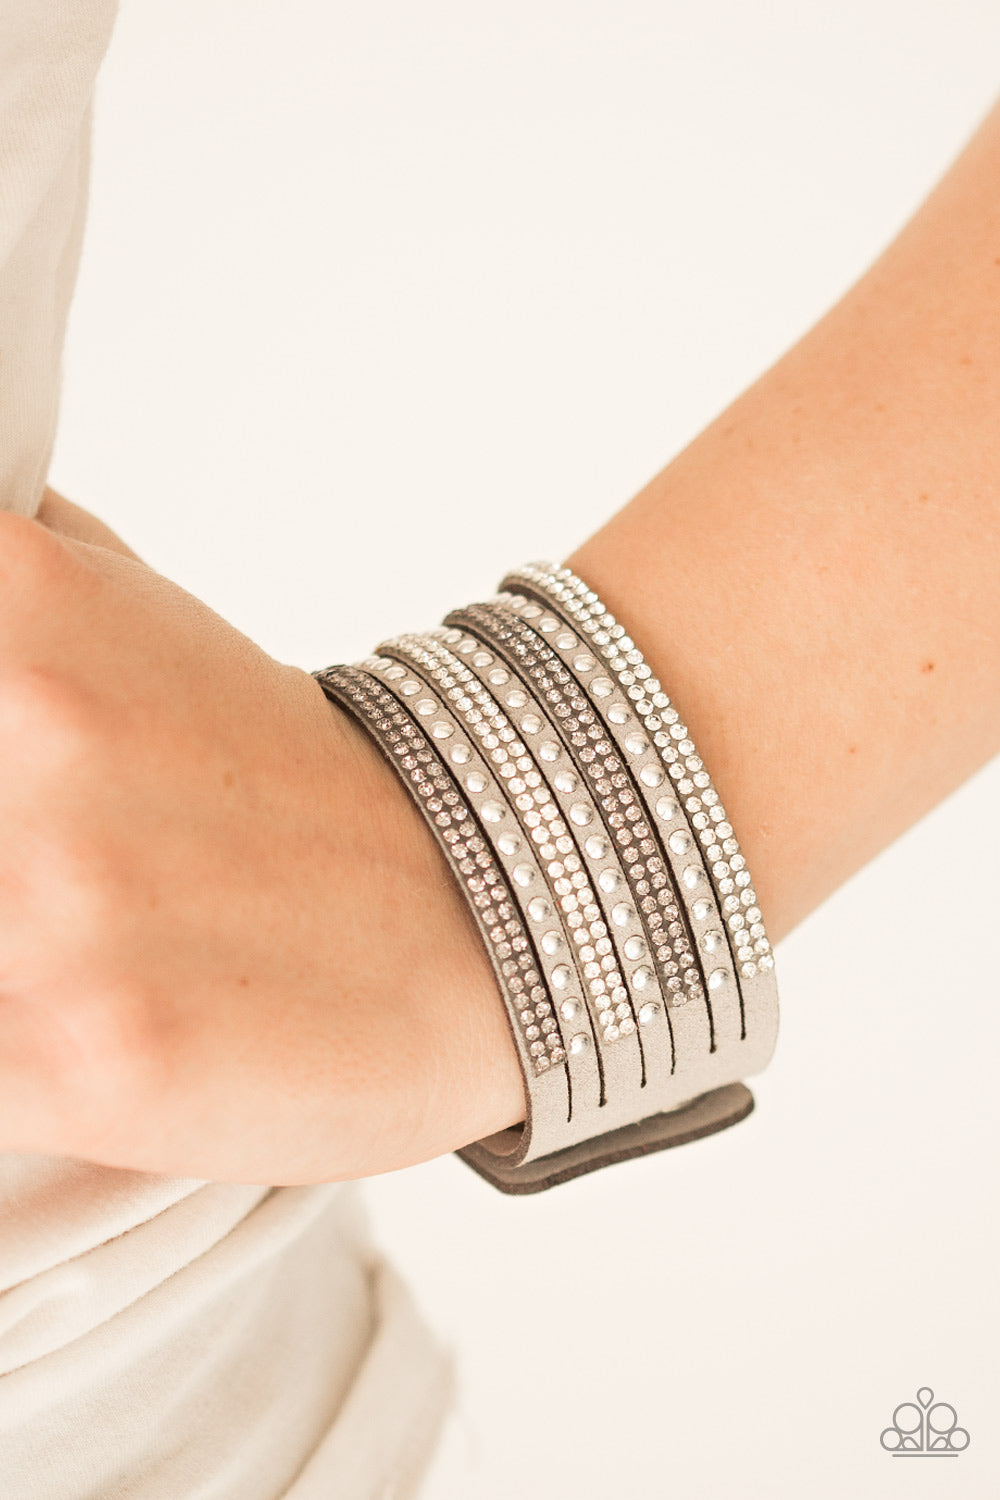 Paparazzi Victory Shine - Silver - Wrap Bracelet - $5 Jewelry With Ashley Swint